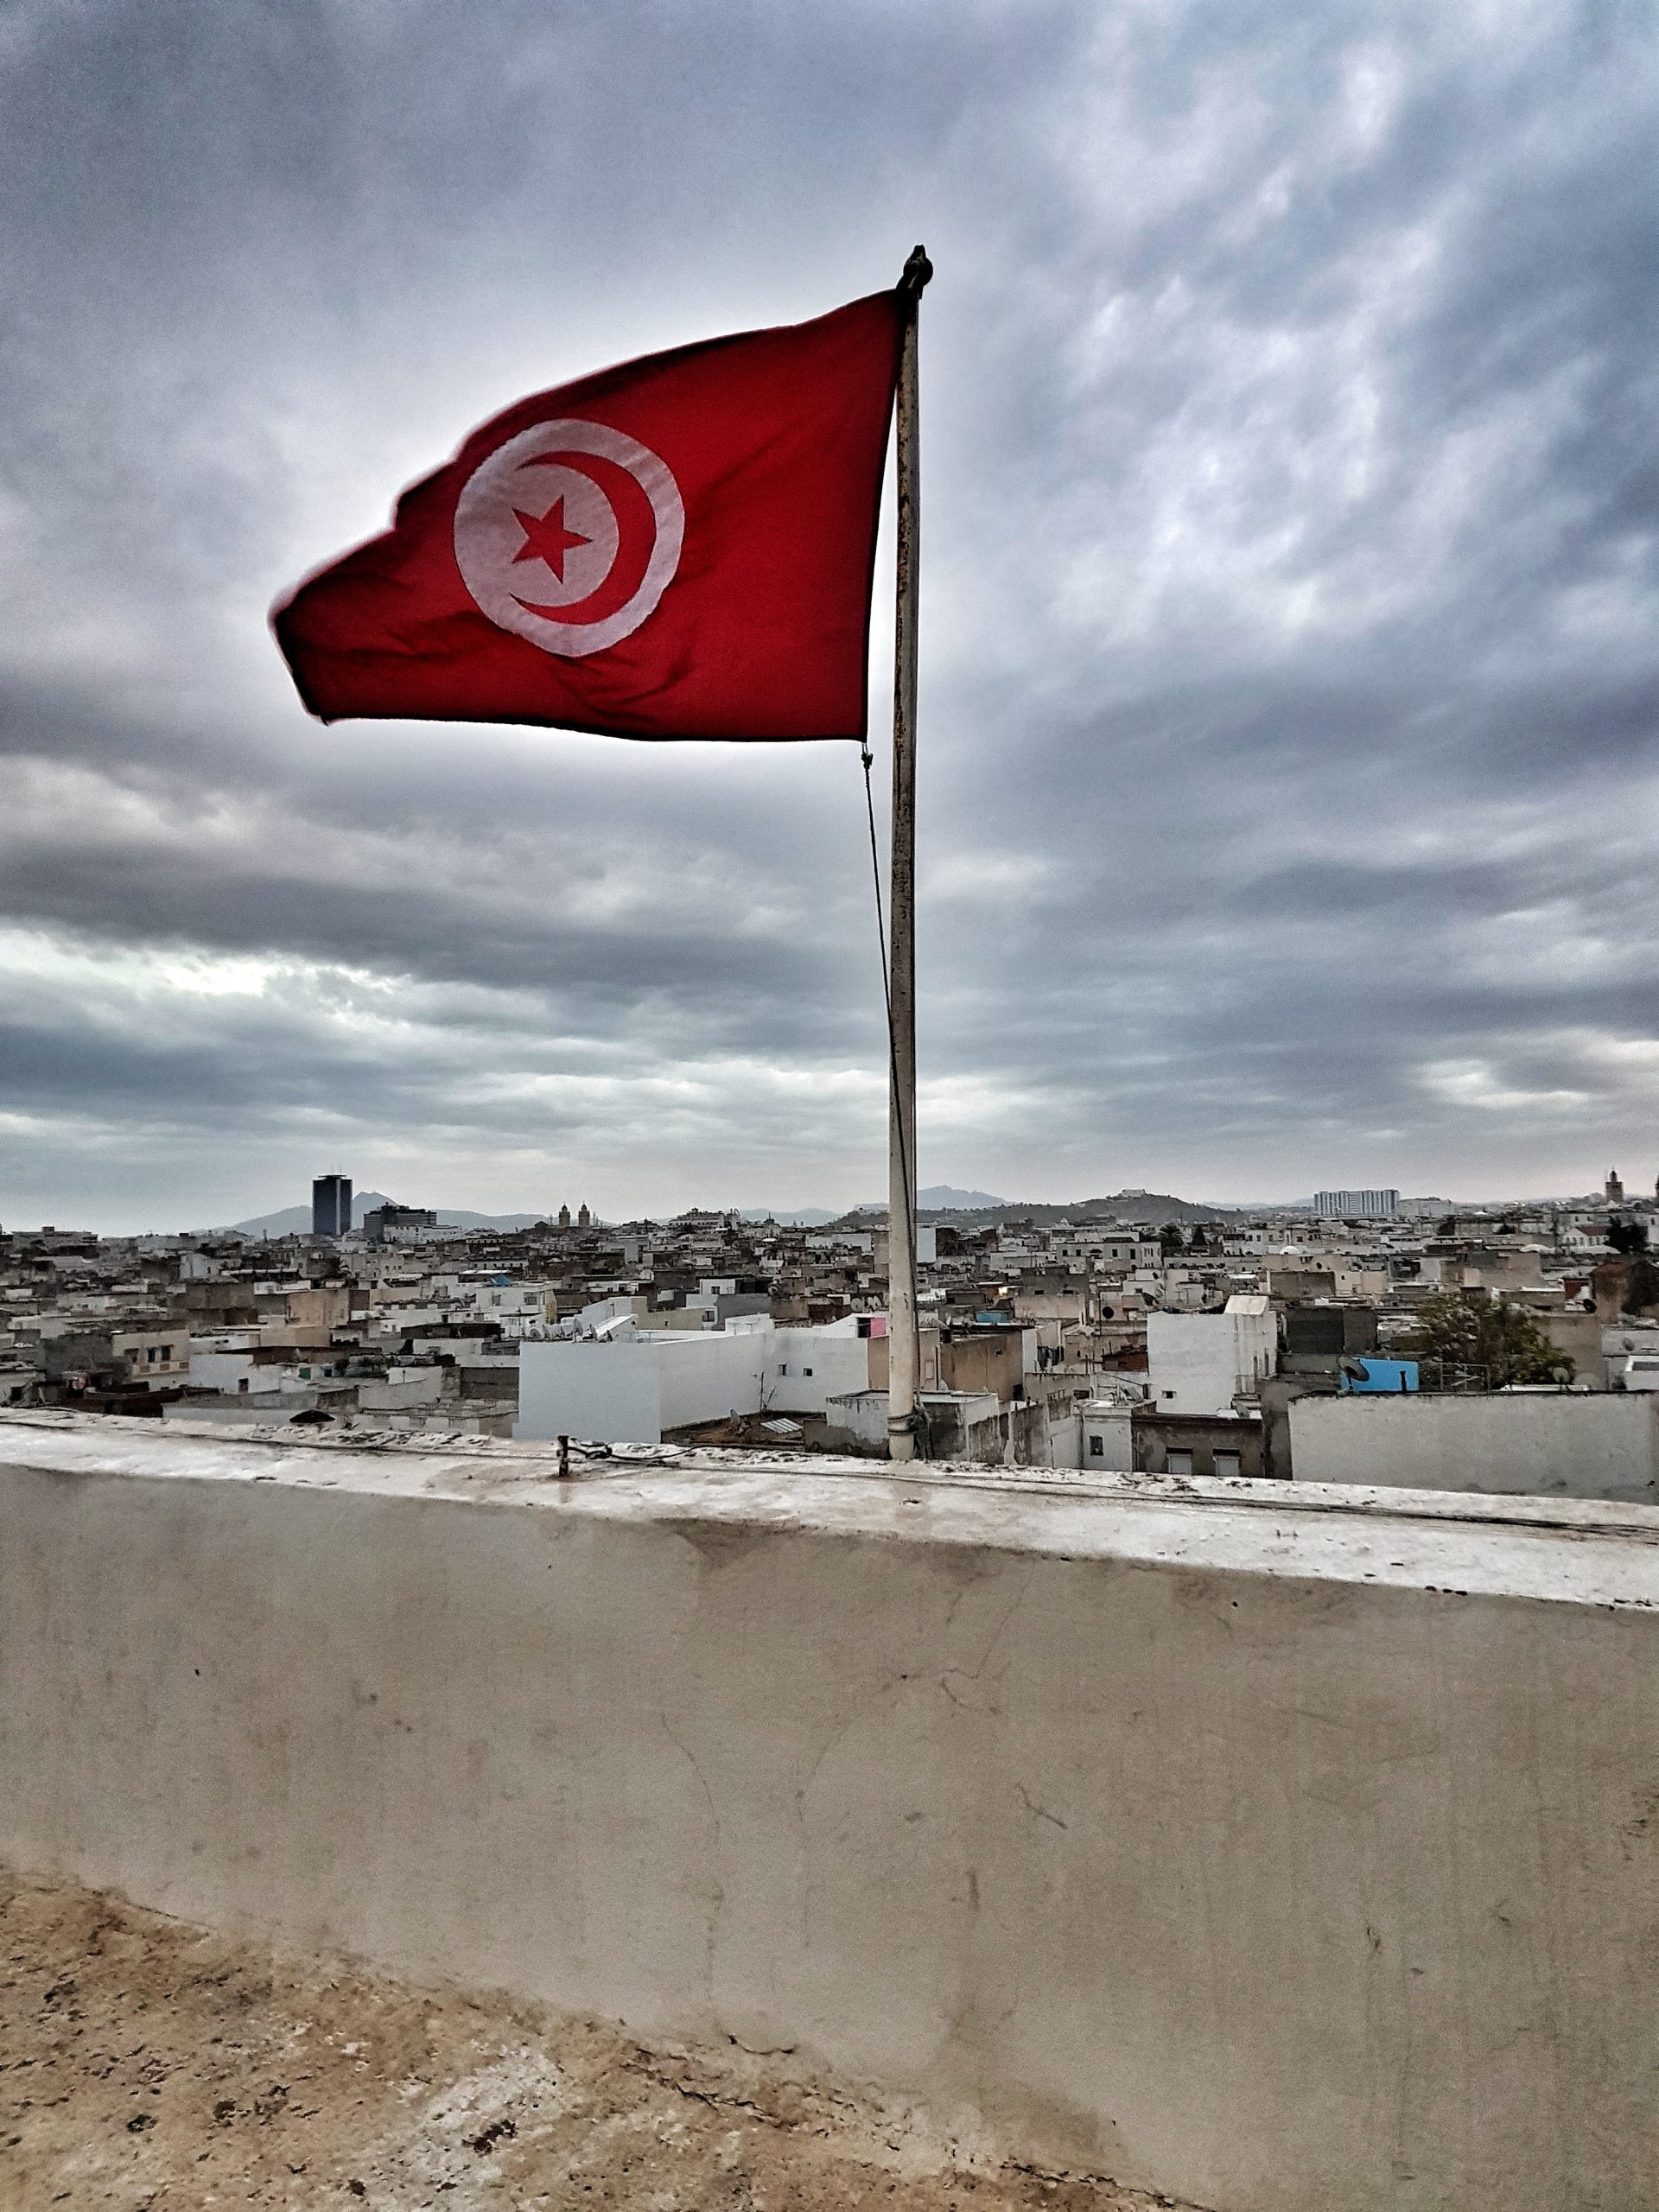 تونس يرفرف فوق المدينة scaled جريمة بشعة في تونس .. مقتل أسرة بأكملها و المشتبه به الإبن وصديقة